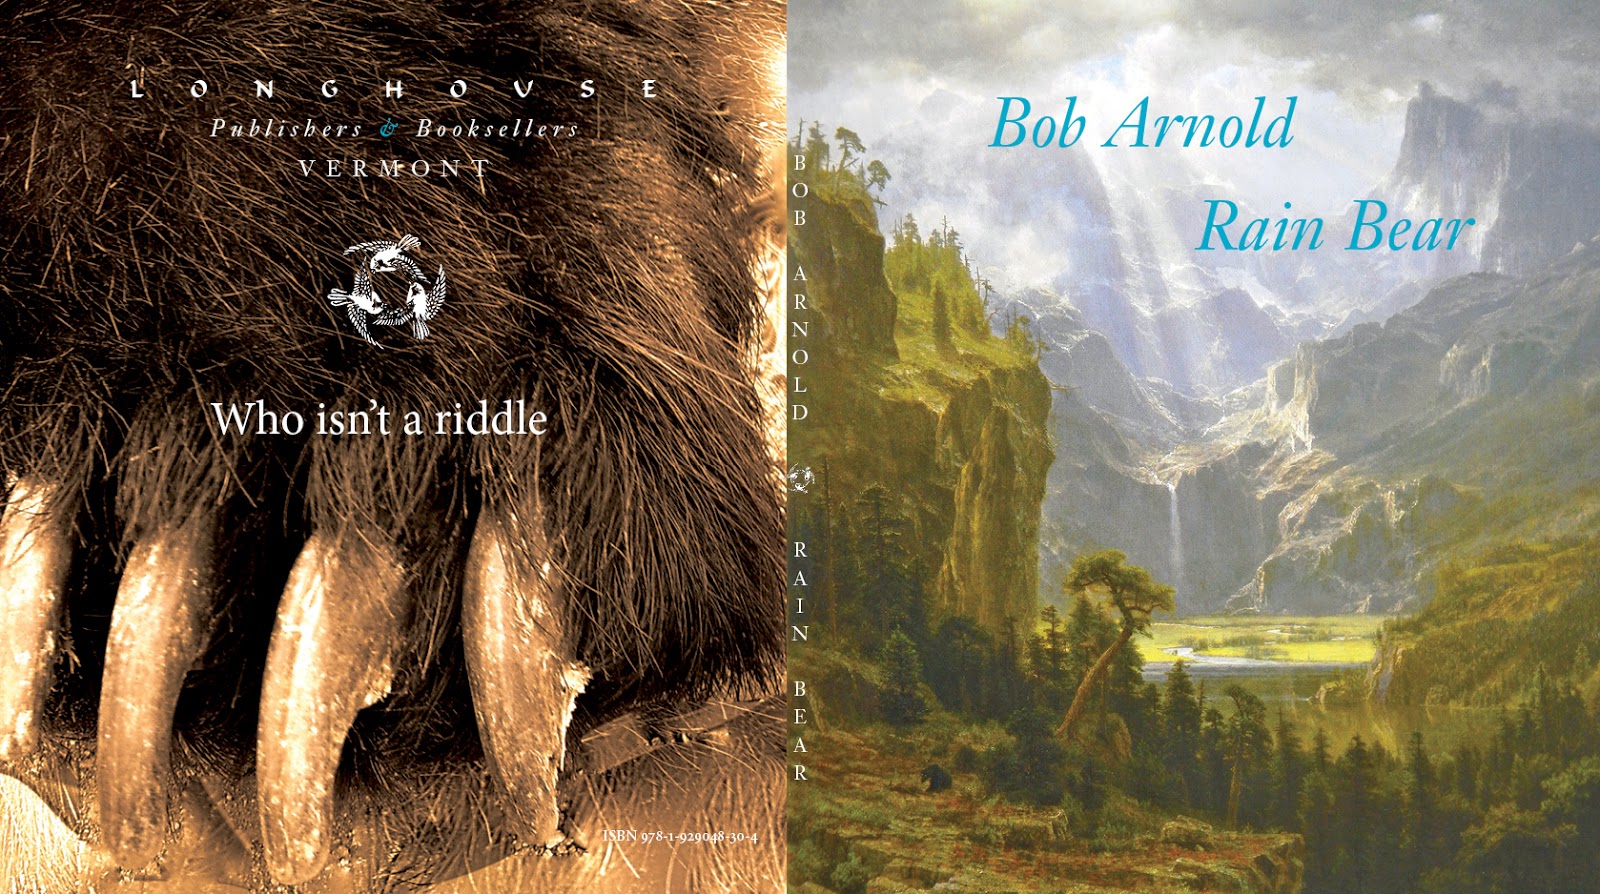 "Rain Bear" by Bob Arnold